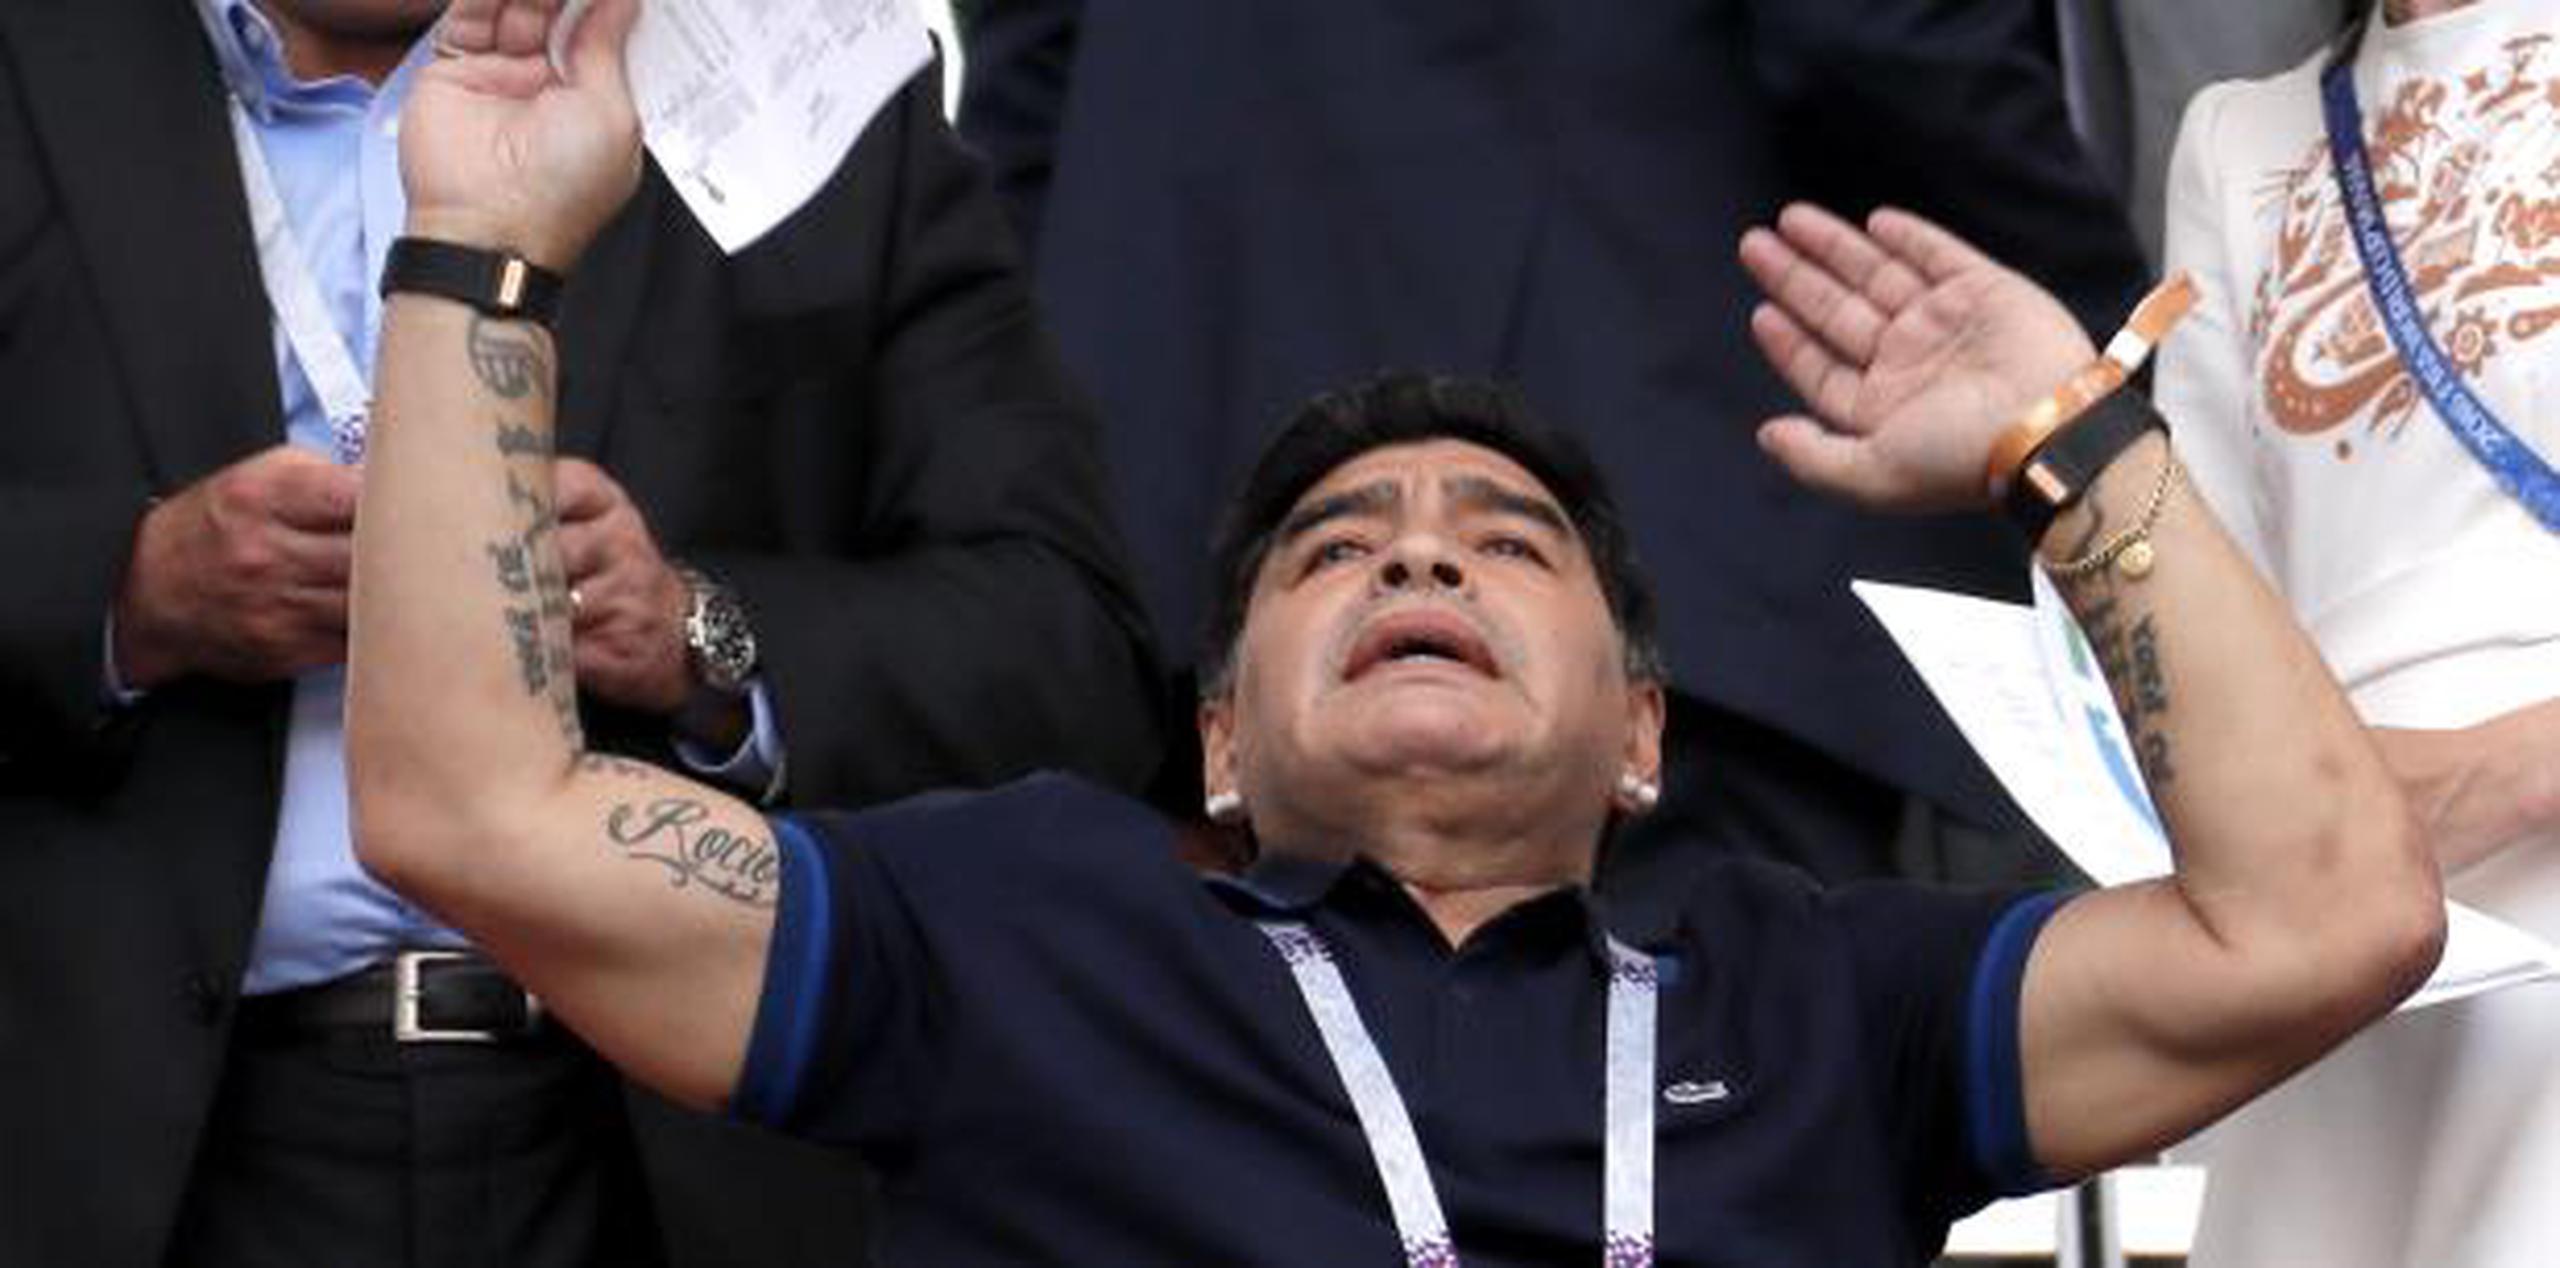 La FIFA señaló que las “insinuaciones” de Maradona fueron “completamente inapropiadas y sin fundamento alguno”. (AP)